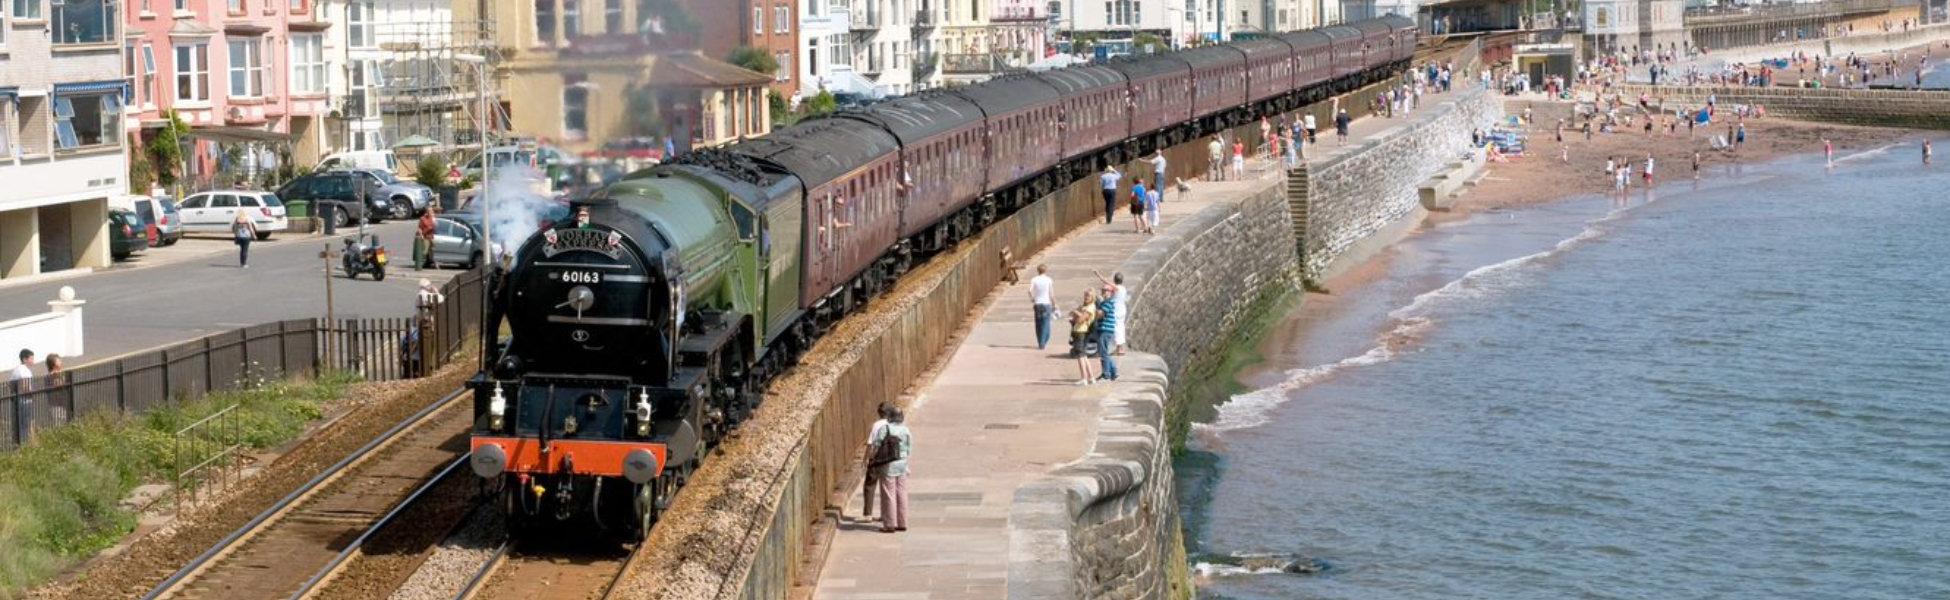 The South Devon Express